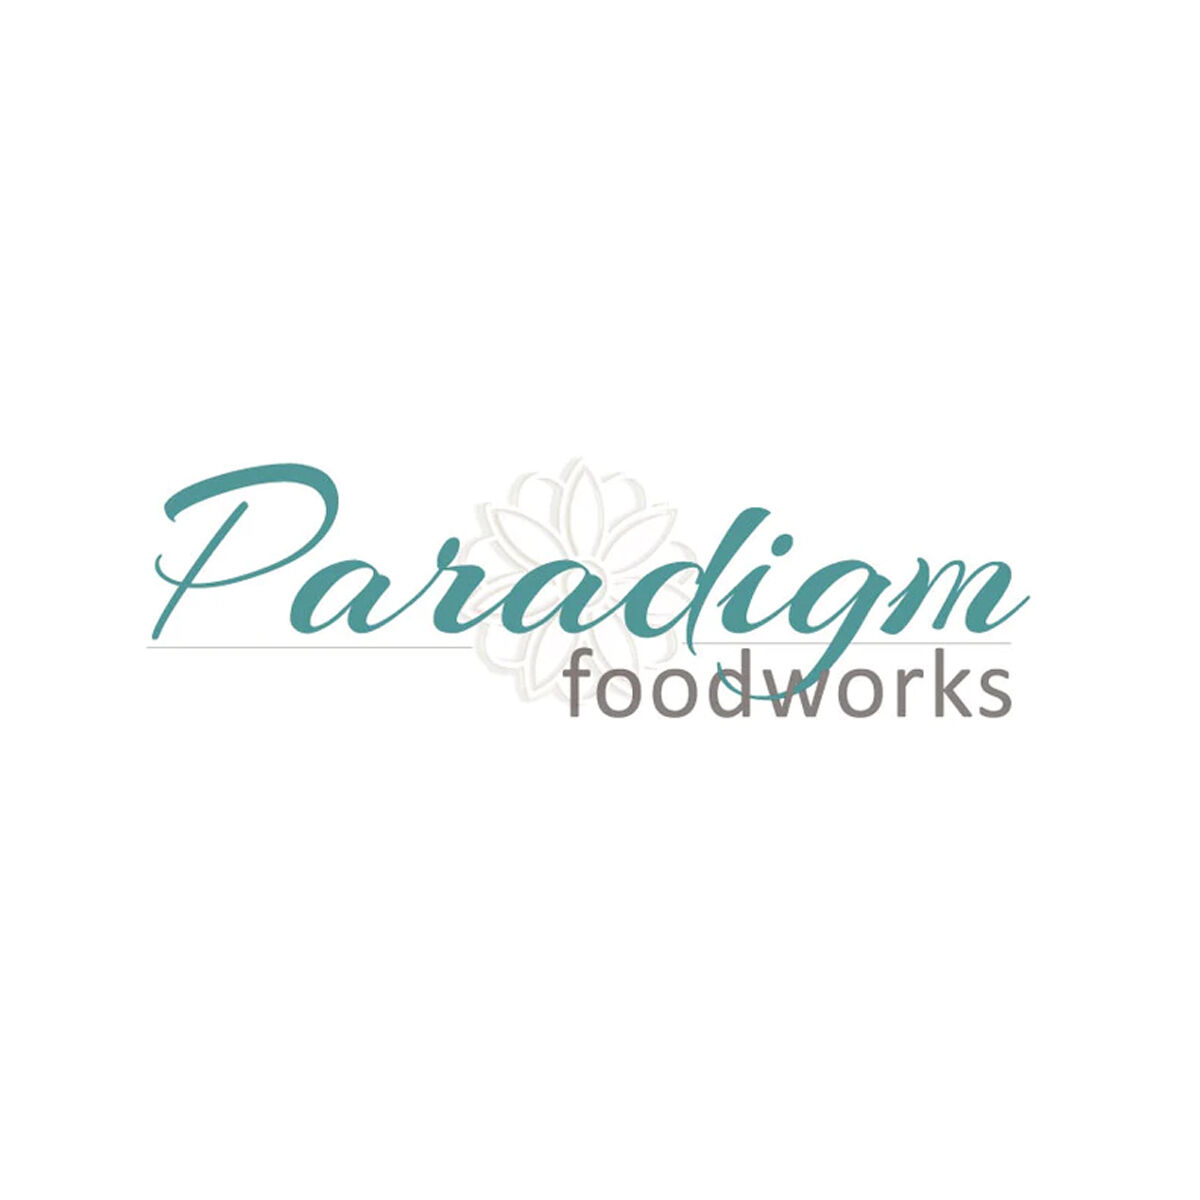 Paradigm Foodworks